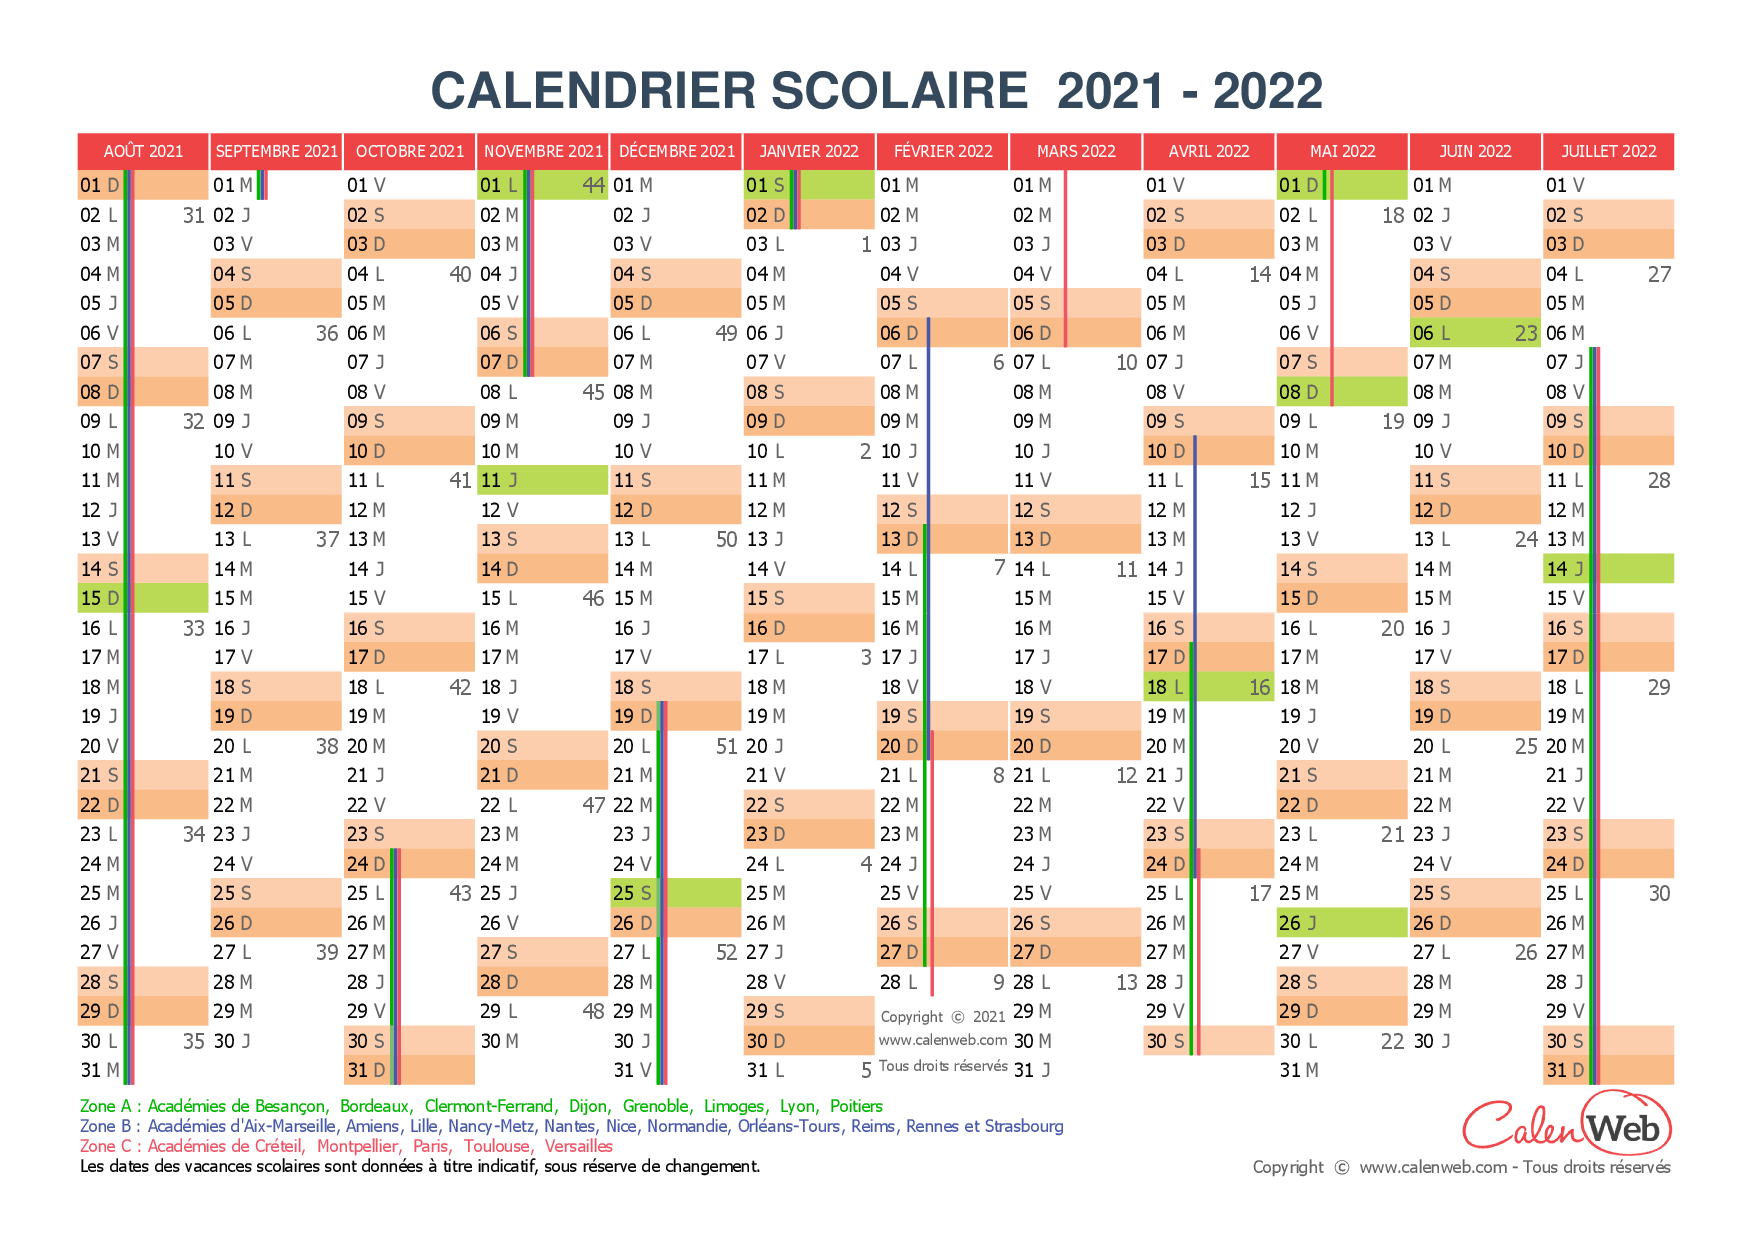 Calendrier Scolaire 2022 Jours Fériés Calendrier scolaire annuel 2021 2022 avec affichage des jours 